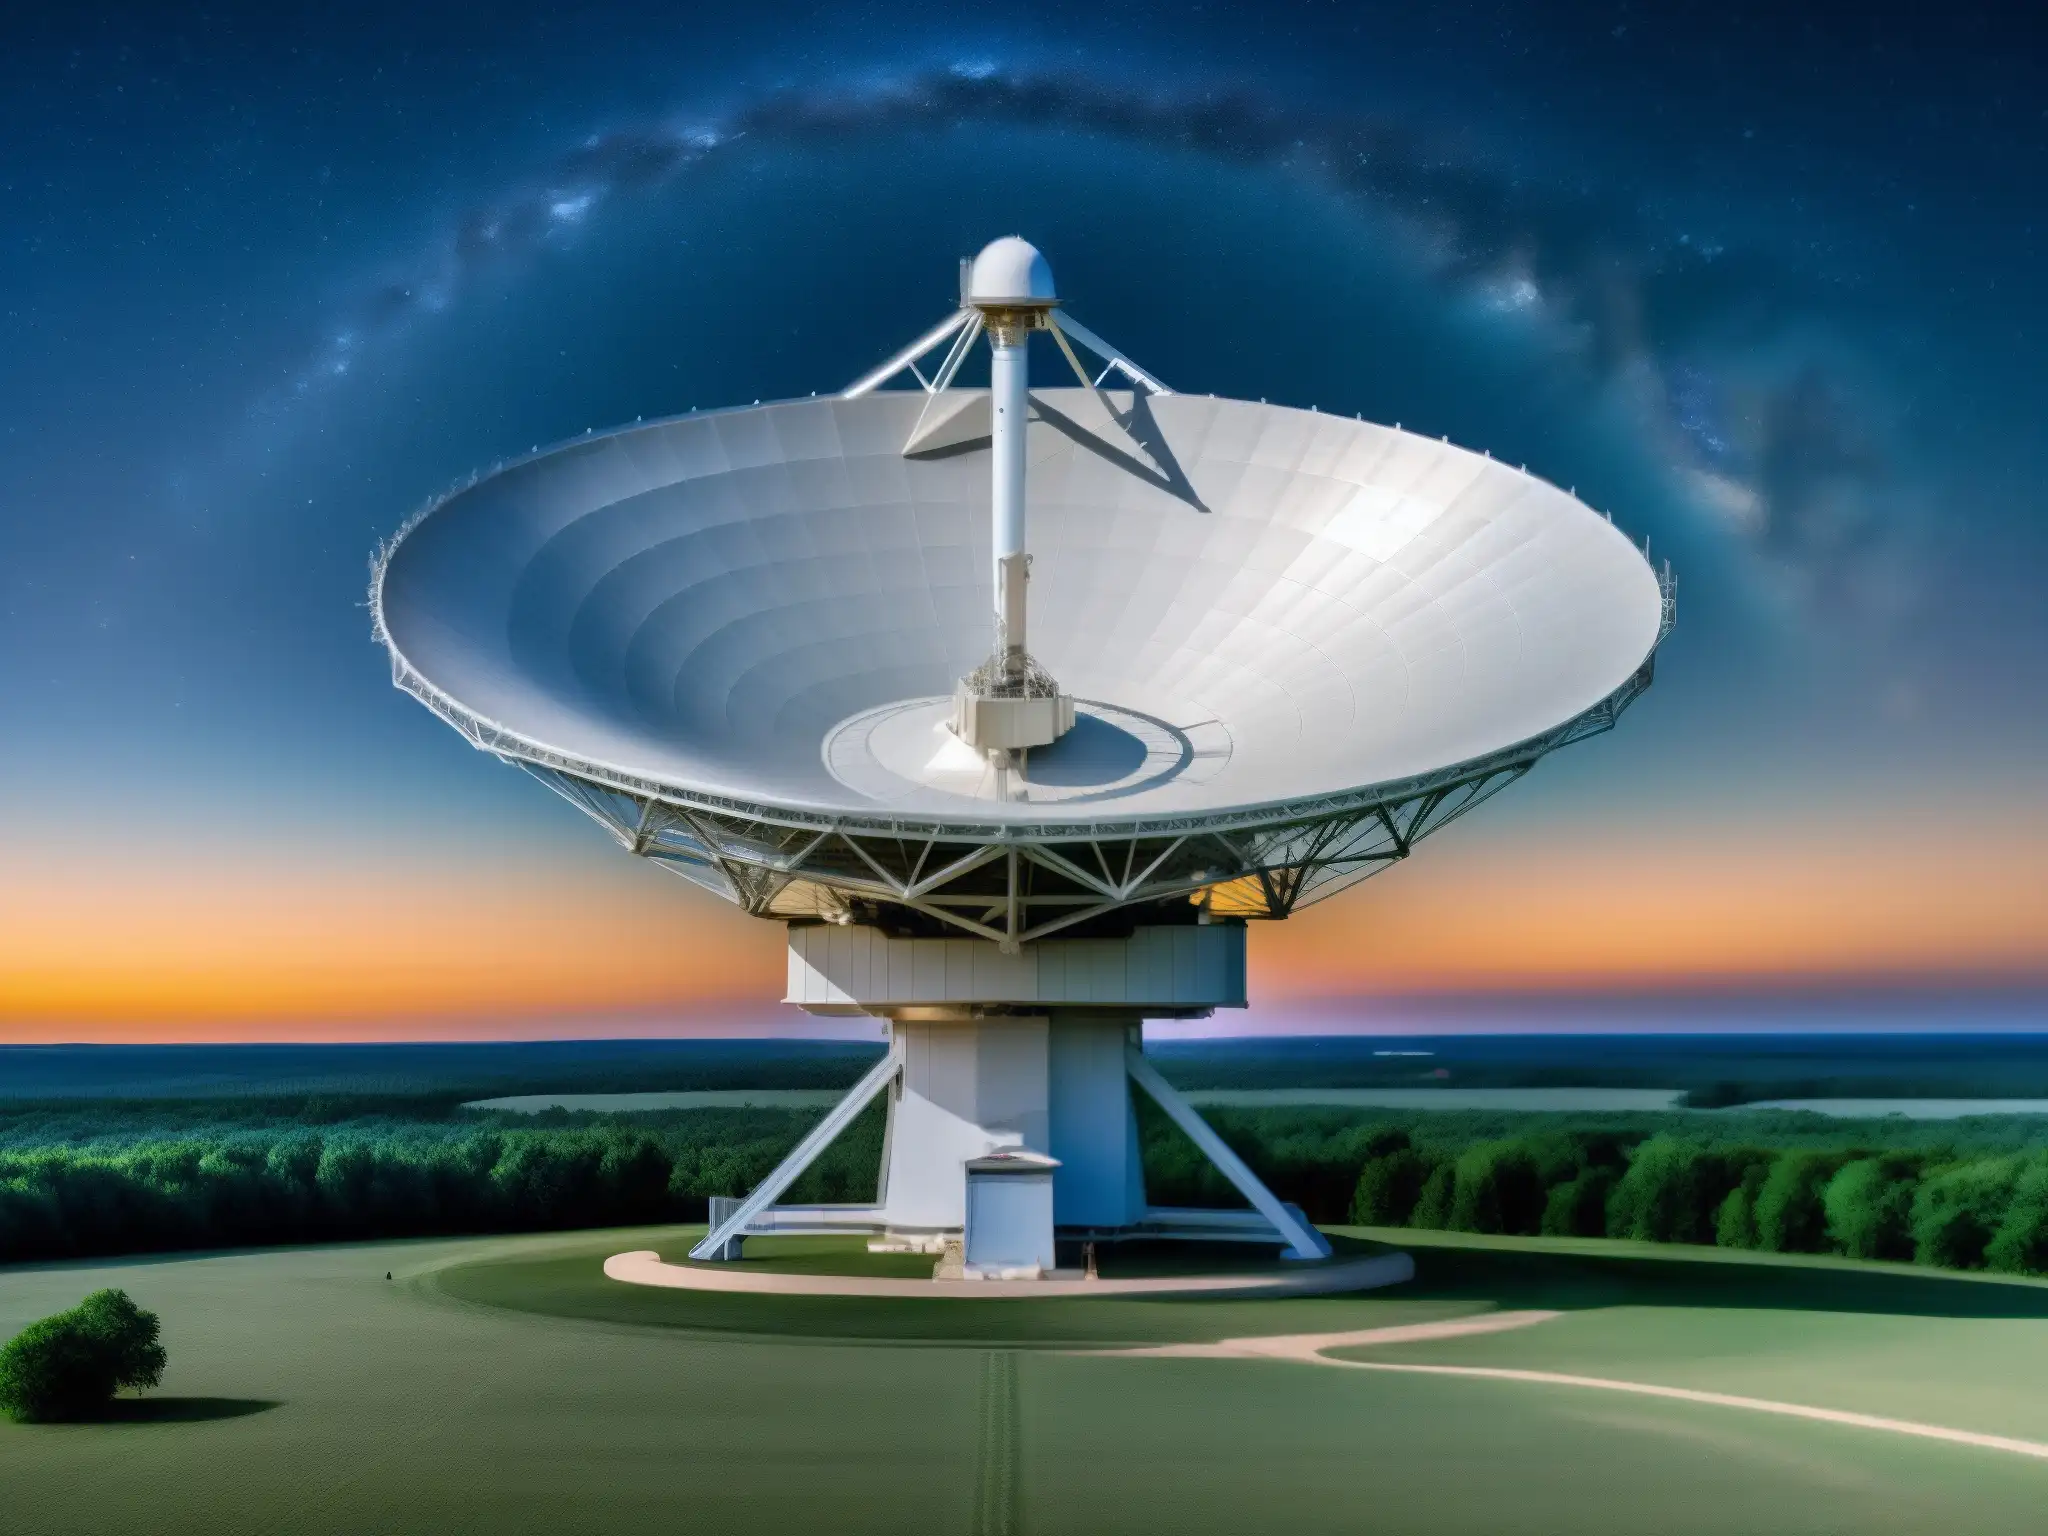 El Big Ear apunta al cielo nocturno, exudando asombro y exploración científica en la búsqueda de comunicación extraterrestre señal Wow